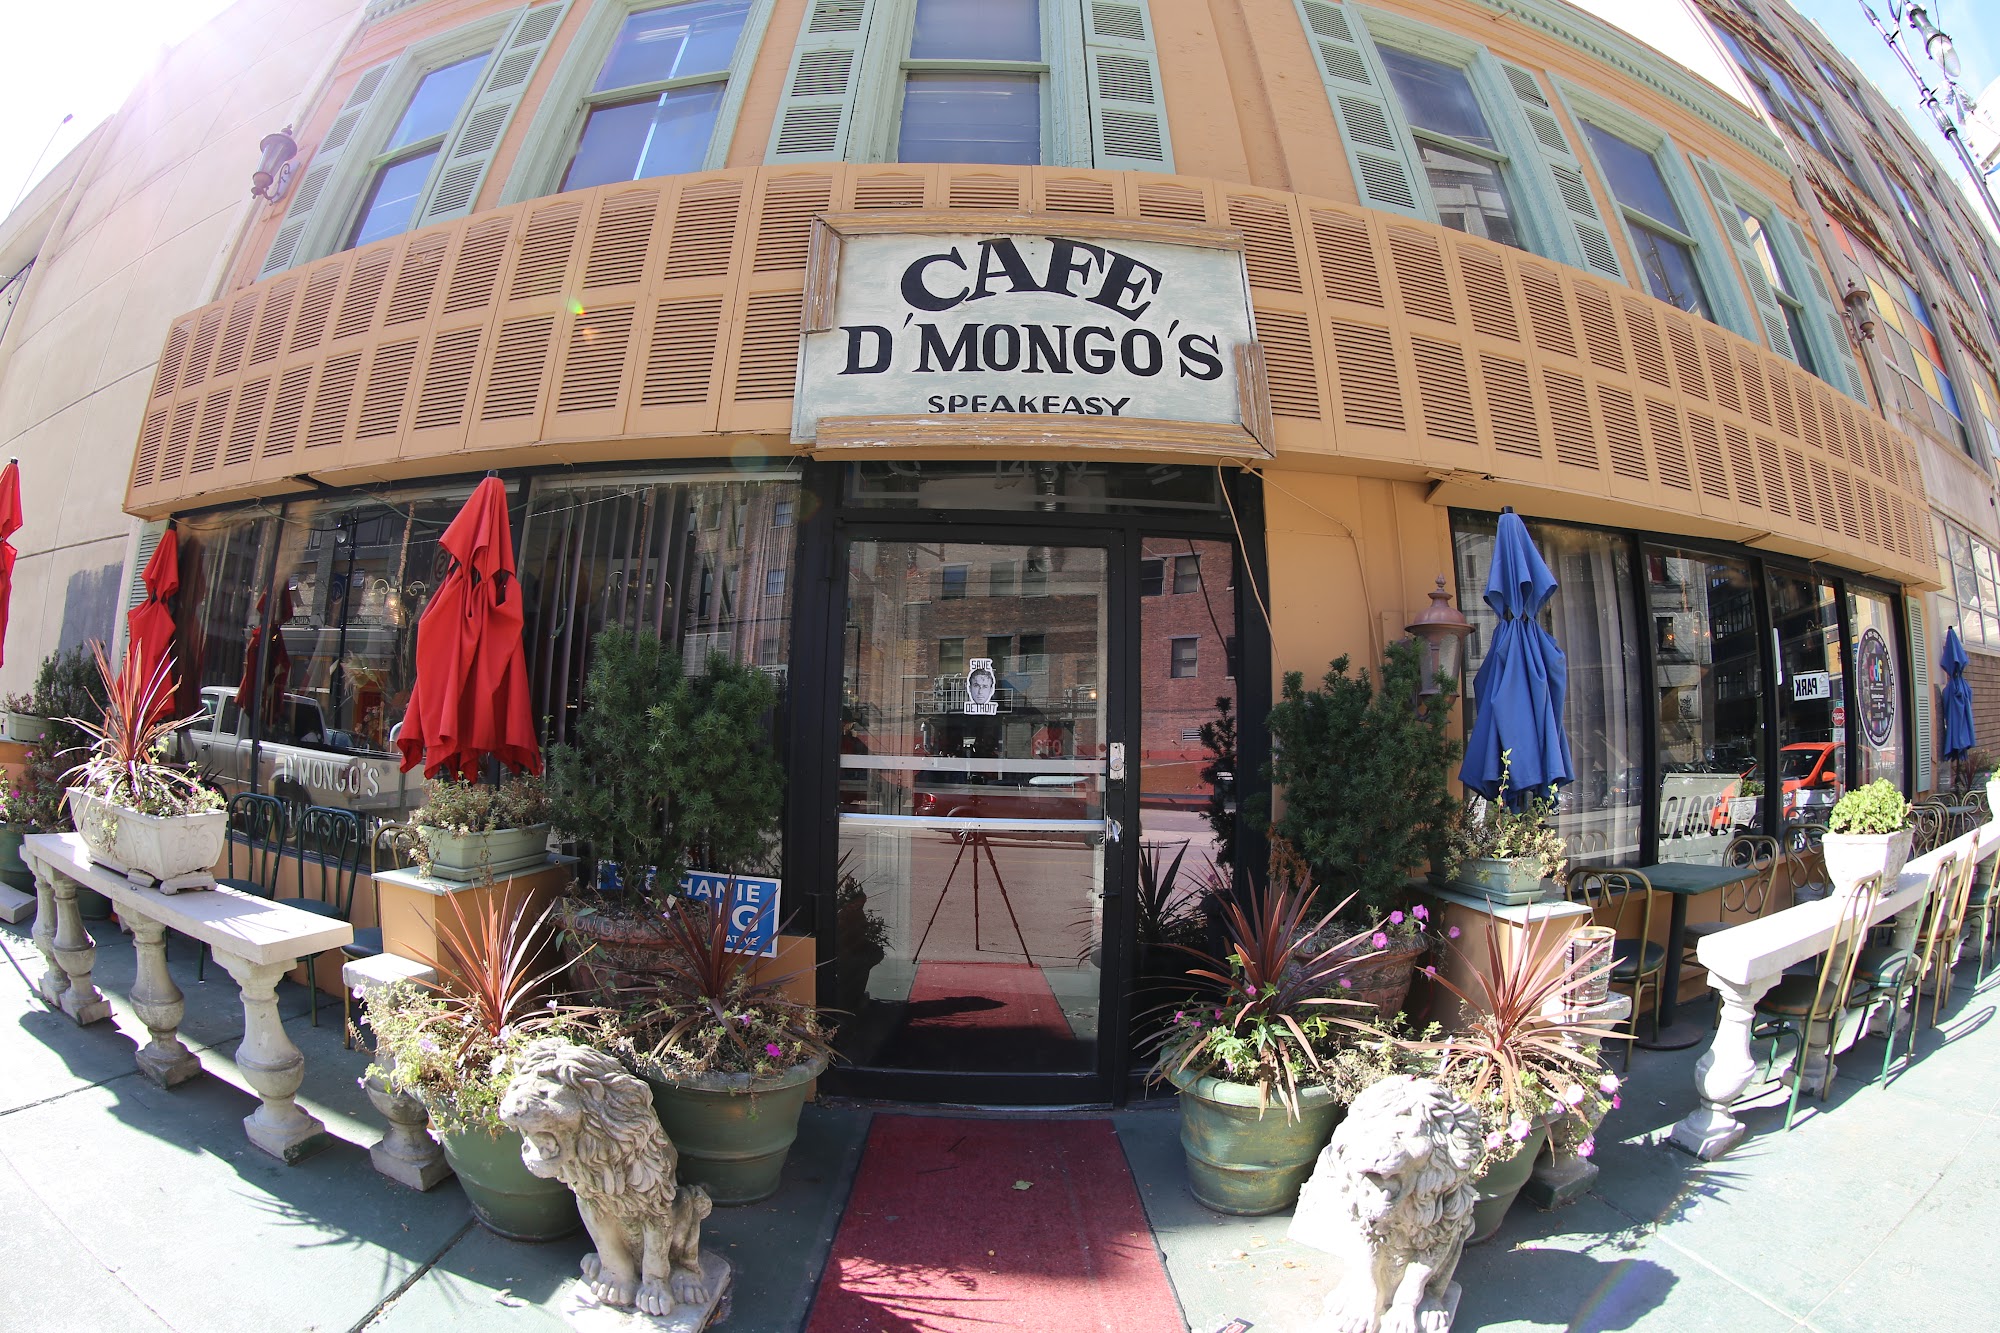 Cafe D'Mongos Speakeasy